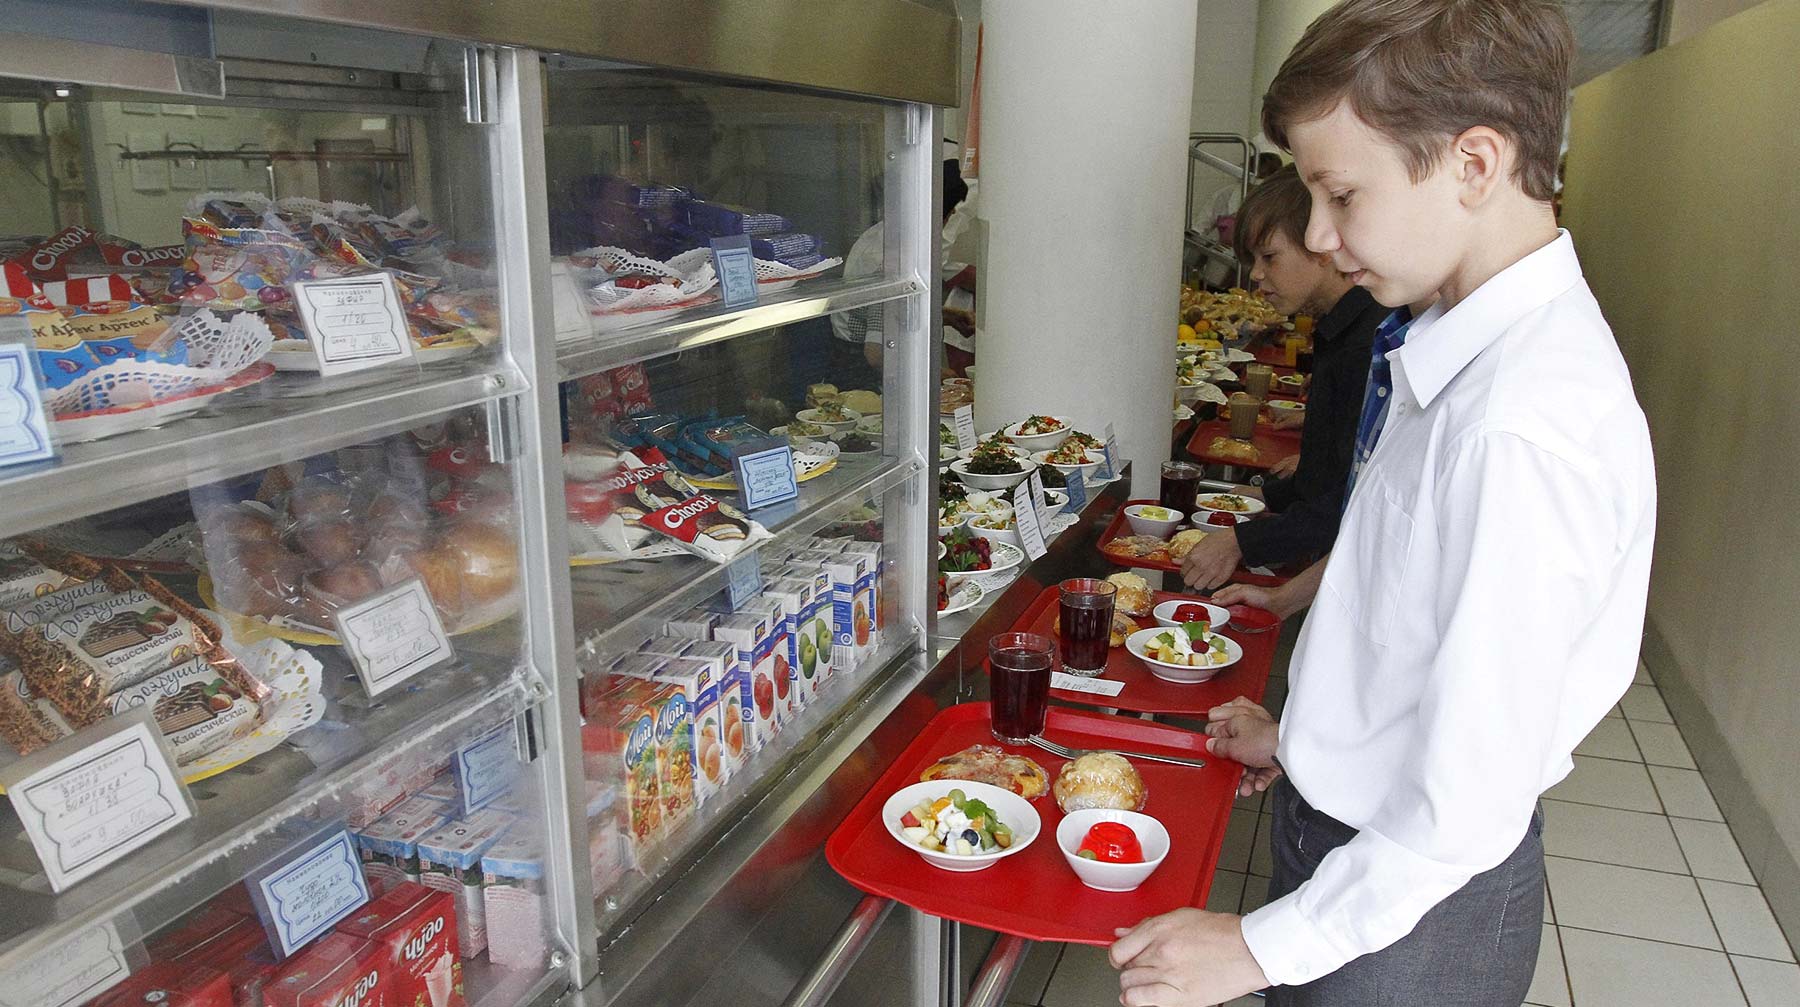 Необходимые фрукты, овощи, рыба, мясо и молоко должны быть в меню учащихся, подчеркнул премьер Фото: © Агенство Москва / Киселев Сергей